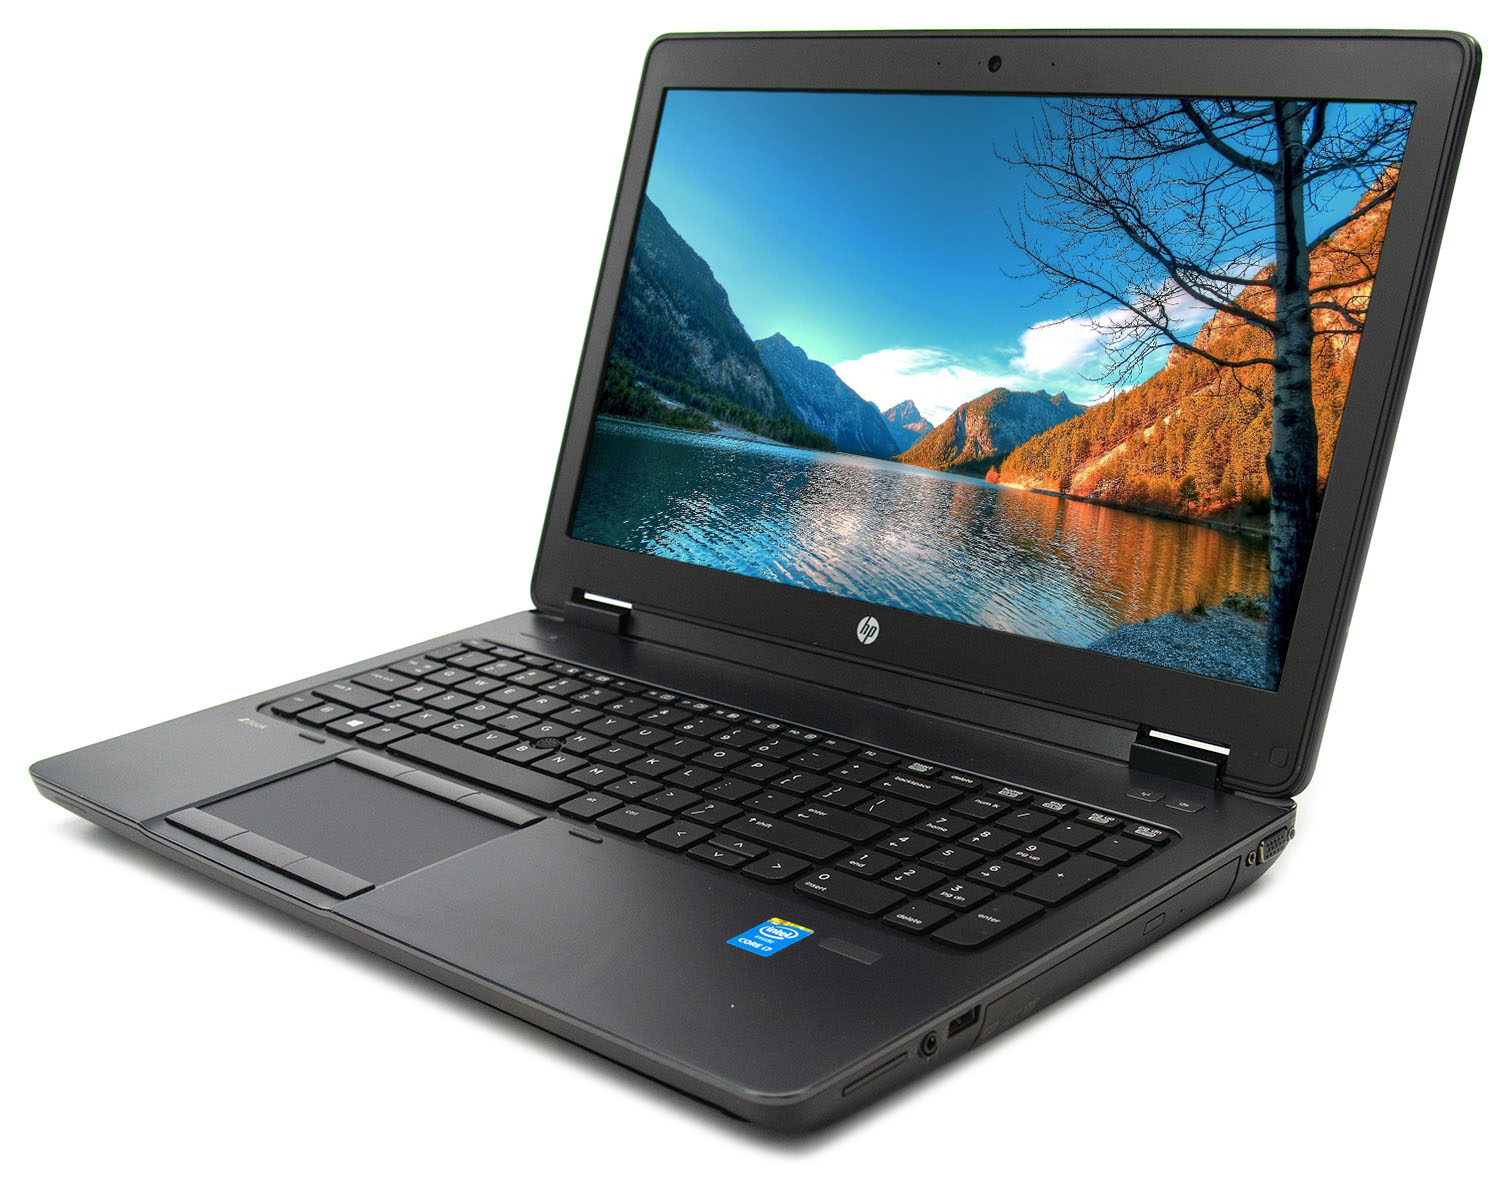 Portátil HP Workstation ZBOOK 15 G2 GRADO B Nvidia K1100M 2GB (Intel Core i7 4710MQ 2.5Ghz/16GB/240SSD/15.6FHD/DVDRW/W8P) Preinstalado